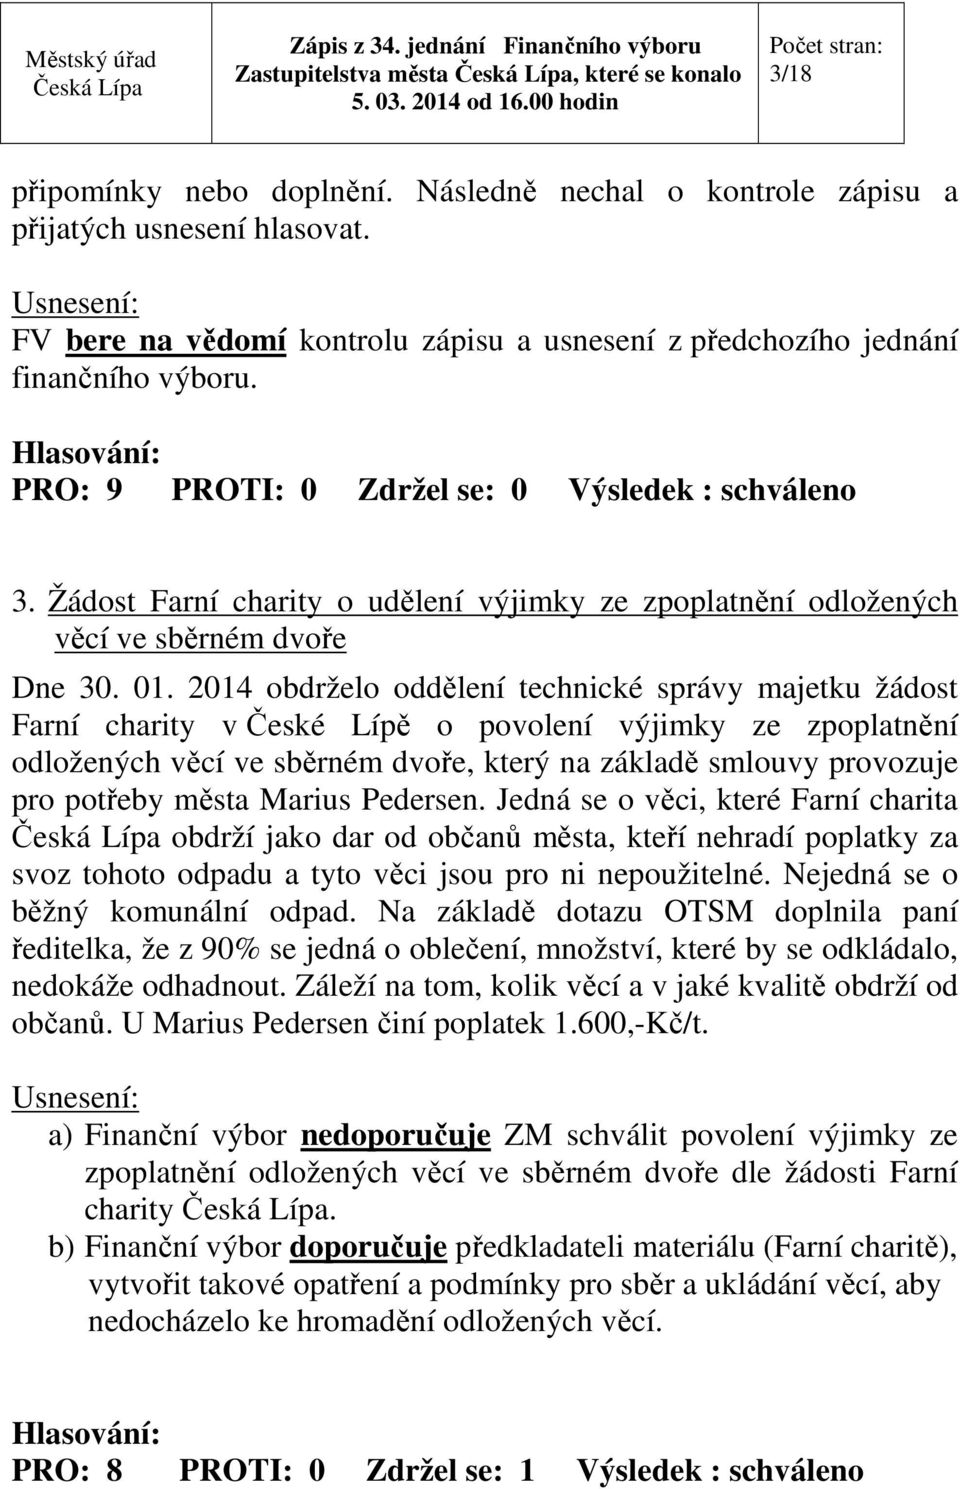 2014 obdrželo oddělení technické správy majetku žádost Farní charity v České Lípě o povolení výjimky ze zpoplatnění odložených věcí ve sběrném dvoře, který na základě smlouvy provozuje pro potřeby